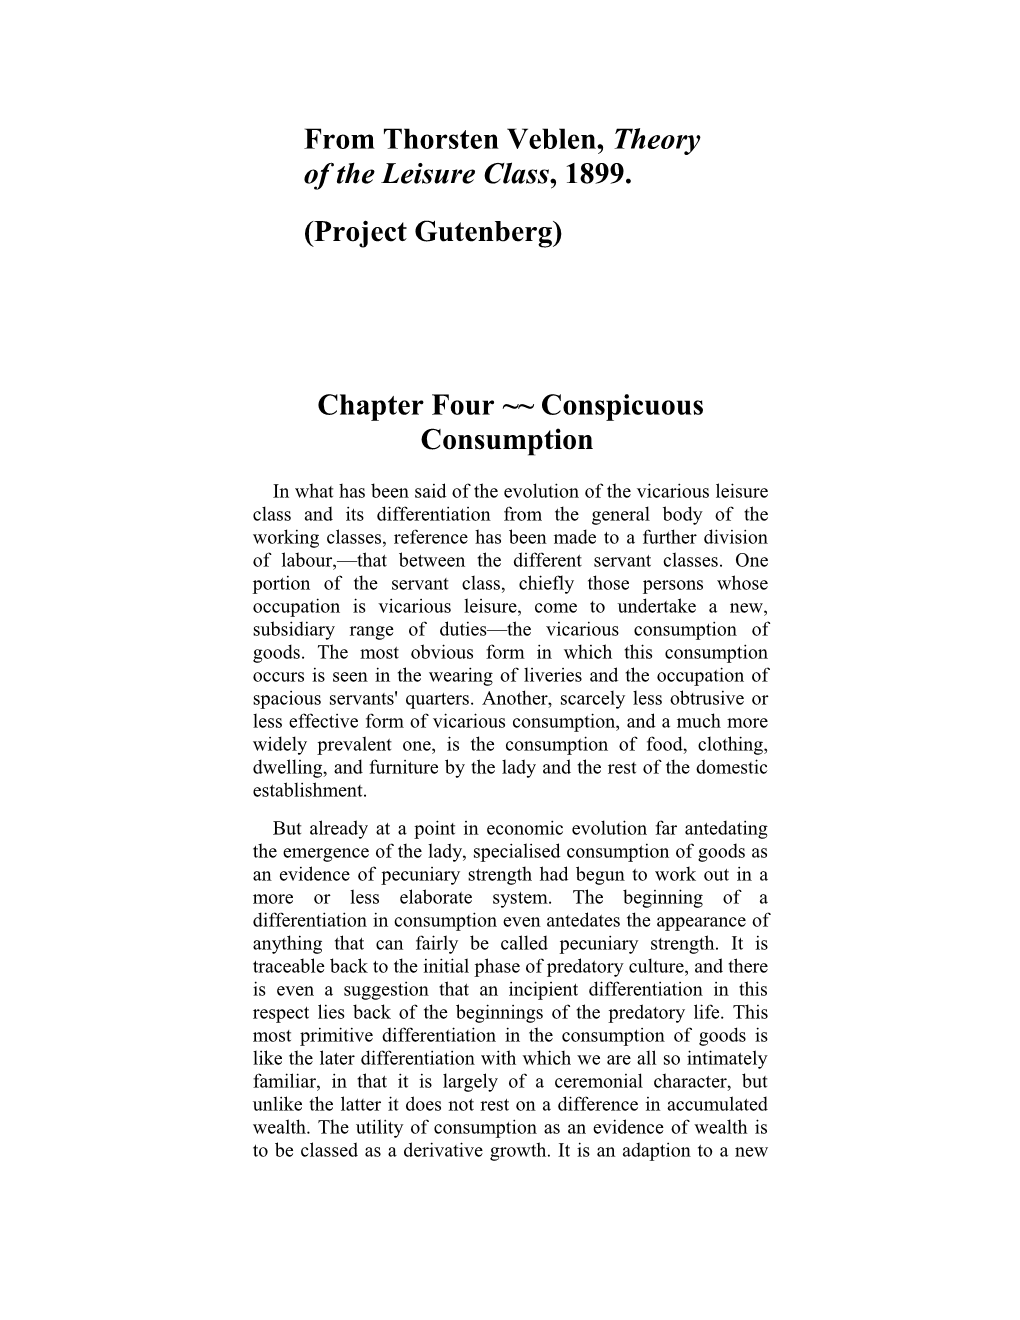 Chapter Four Conspicuous Consumption